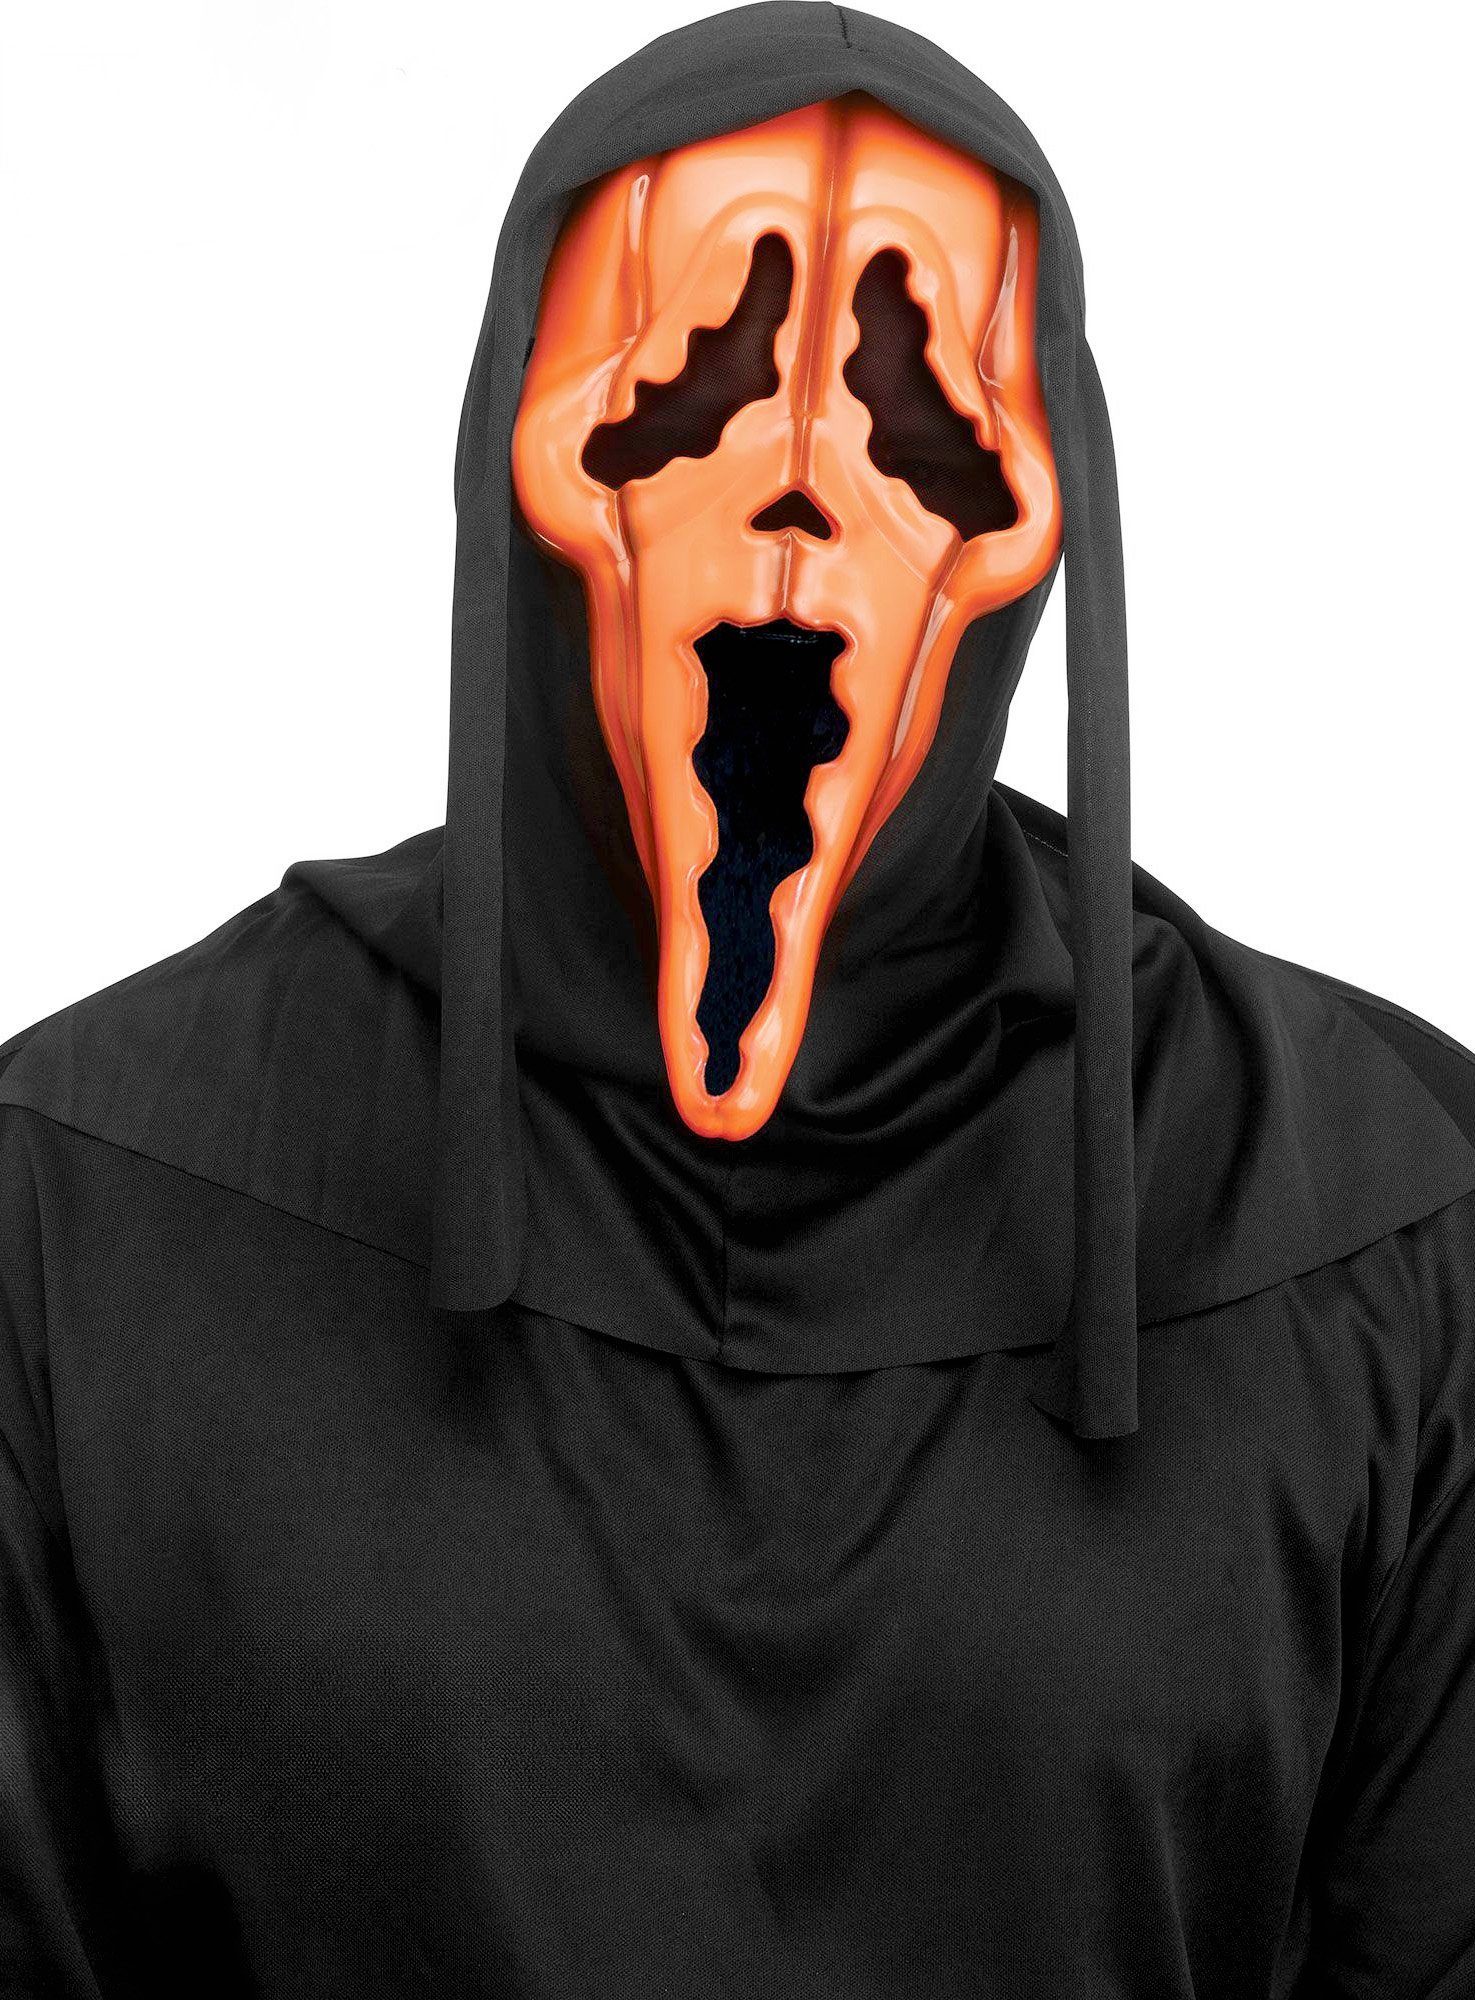 Fun World Verkleidungsmaske Scream - Ghostface Kürbismaske, Die ikonische Scream Maske im Kürbis-Look